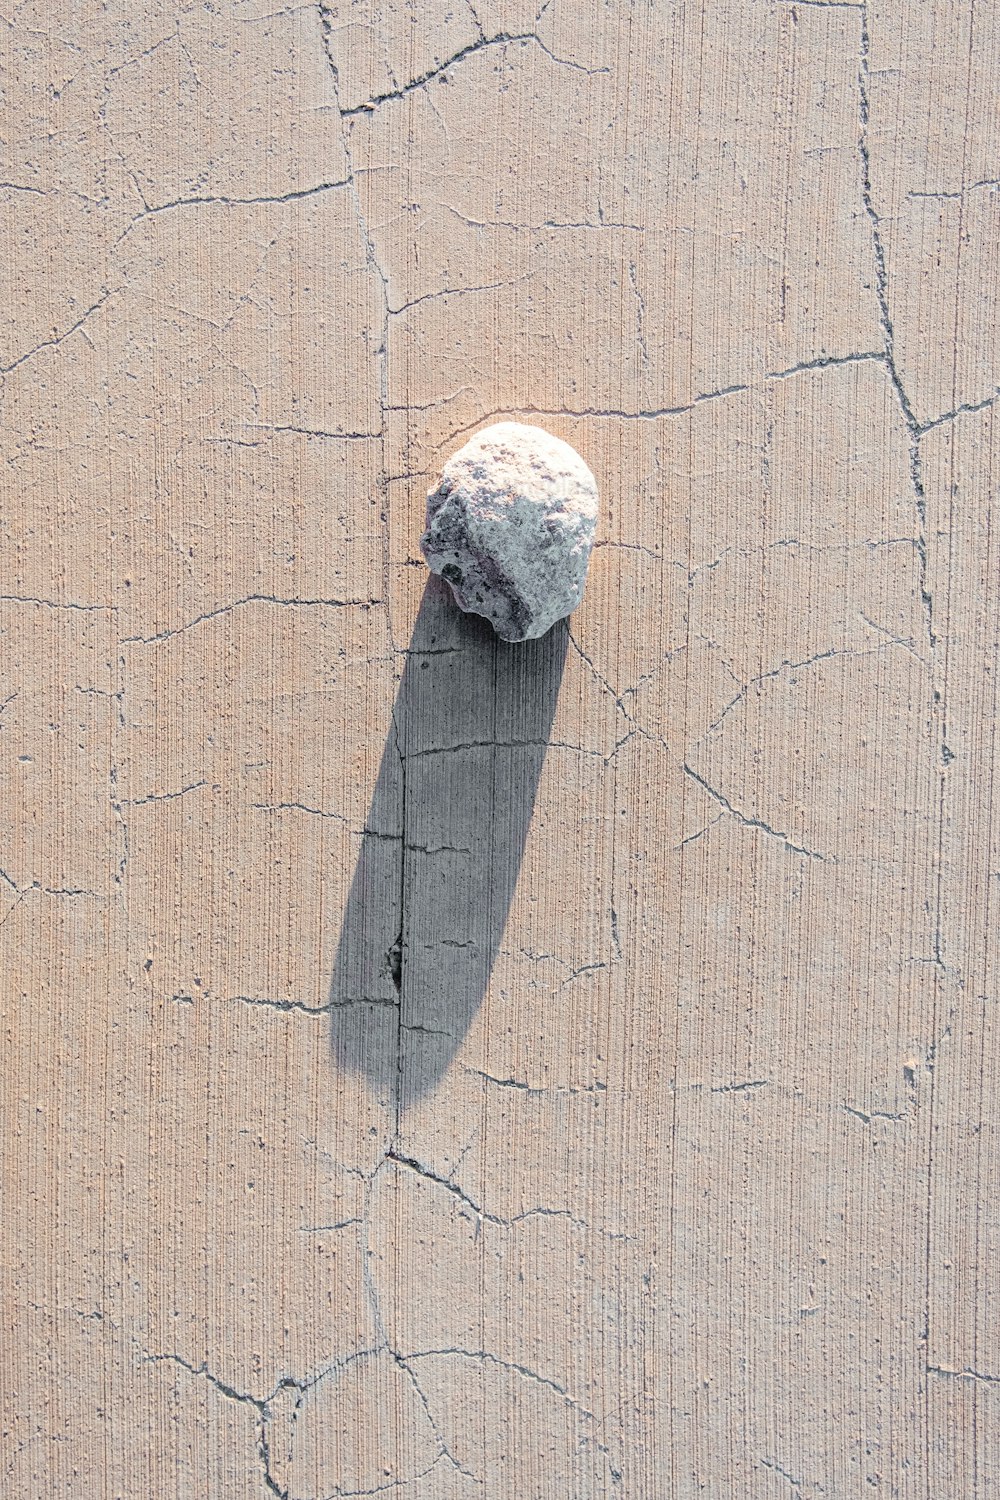 un rocher posé sur une dalle de ciment